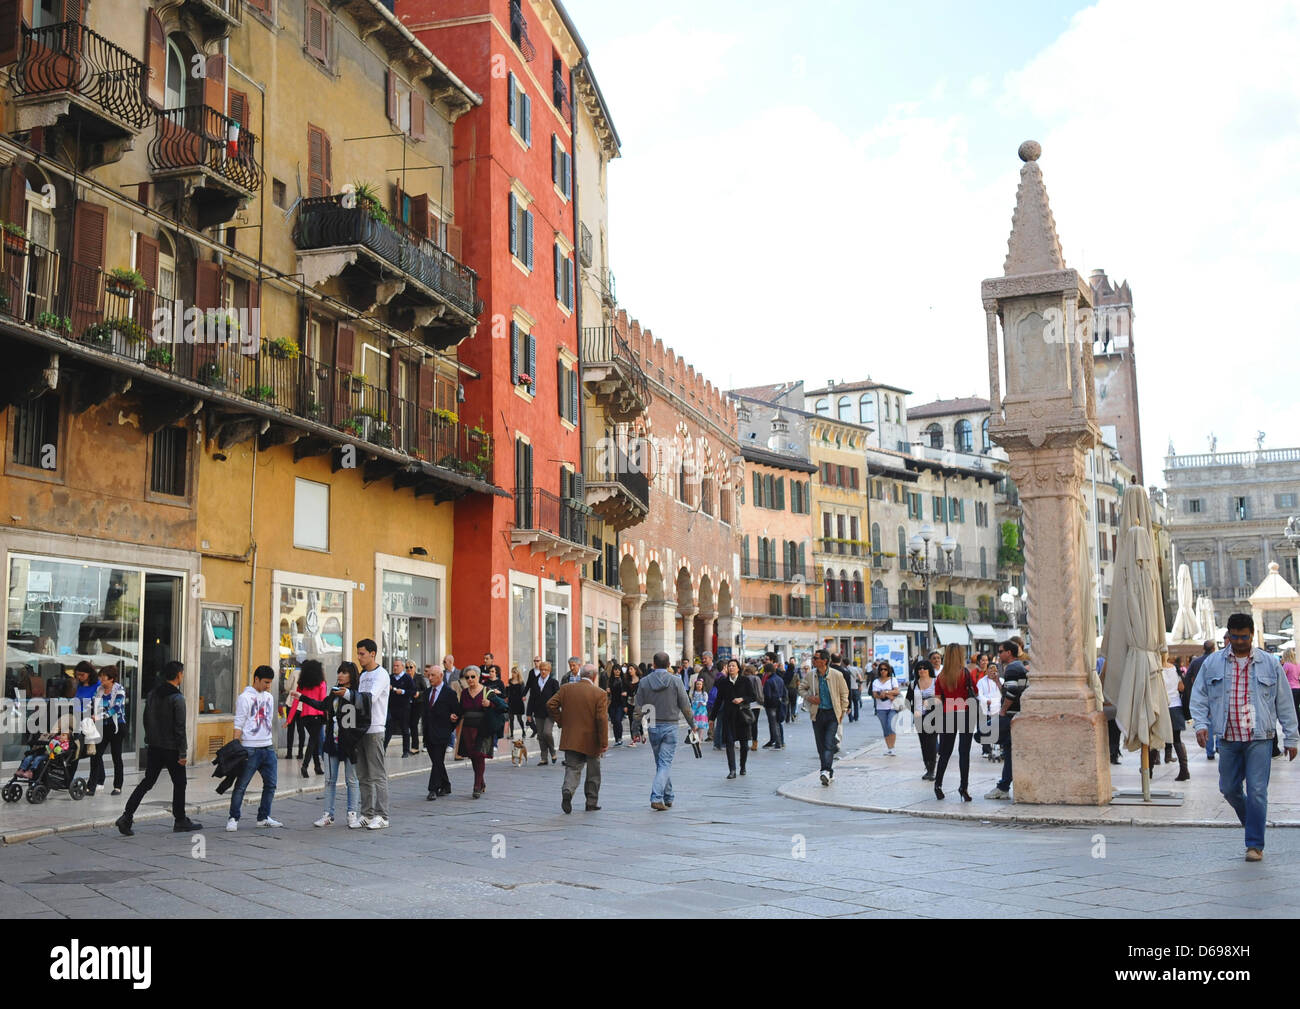 View of the Piazza delle Erbe with the Colonna del Mercato in Verona, Italy, 21 April 2012. Photo: Britta Pedersen Stock Photo